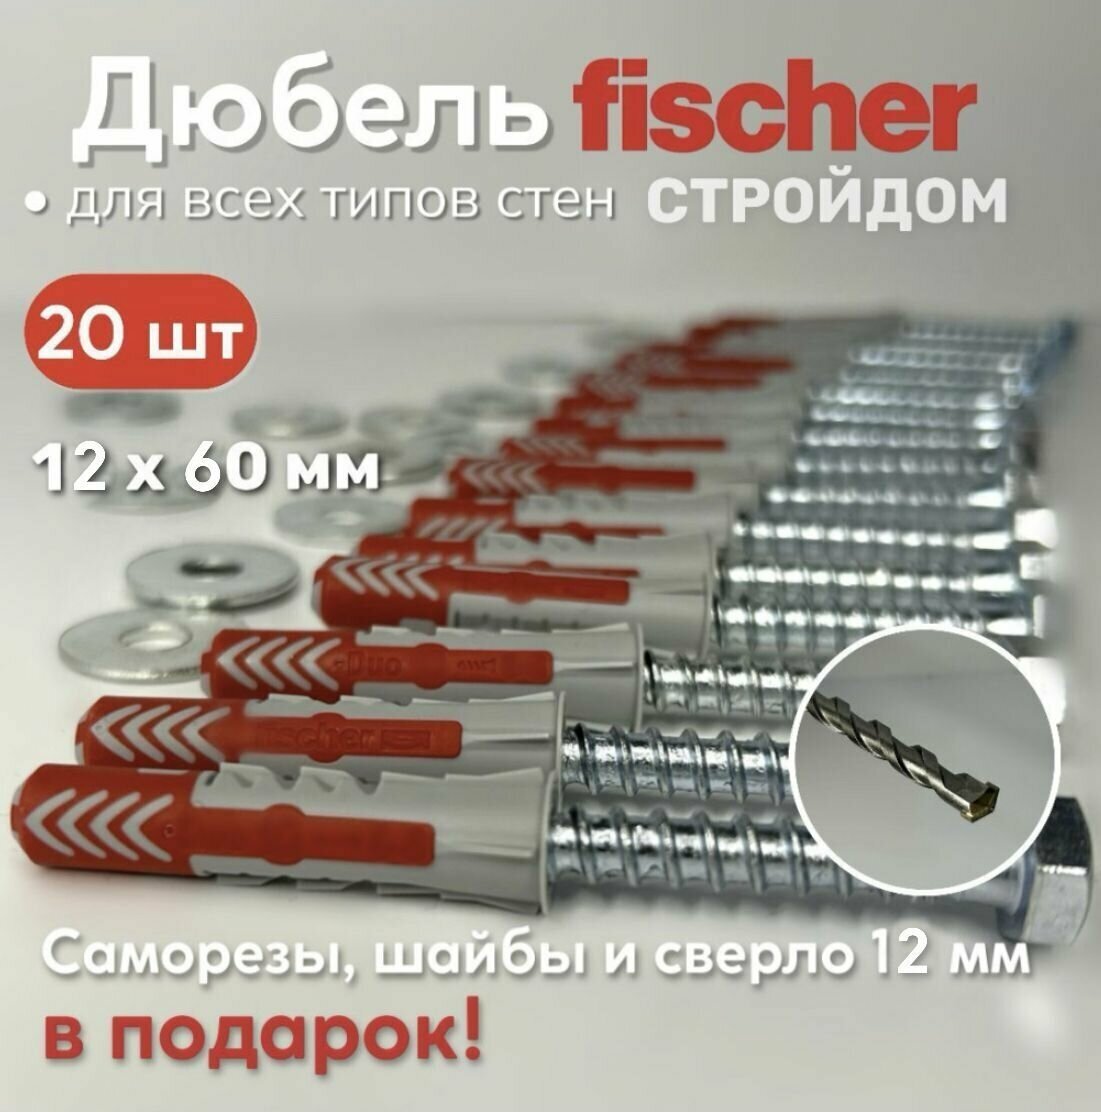 Дюбель универсальный Fischer DUOPOWER высокотехнологичный, 12x60 мм, 20 шт